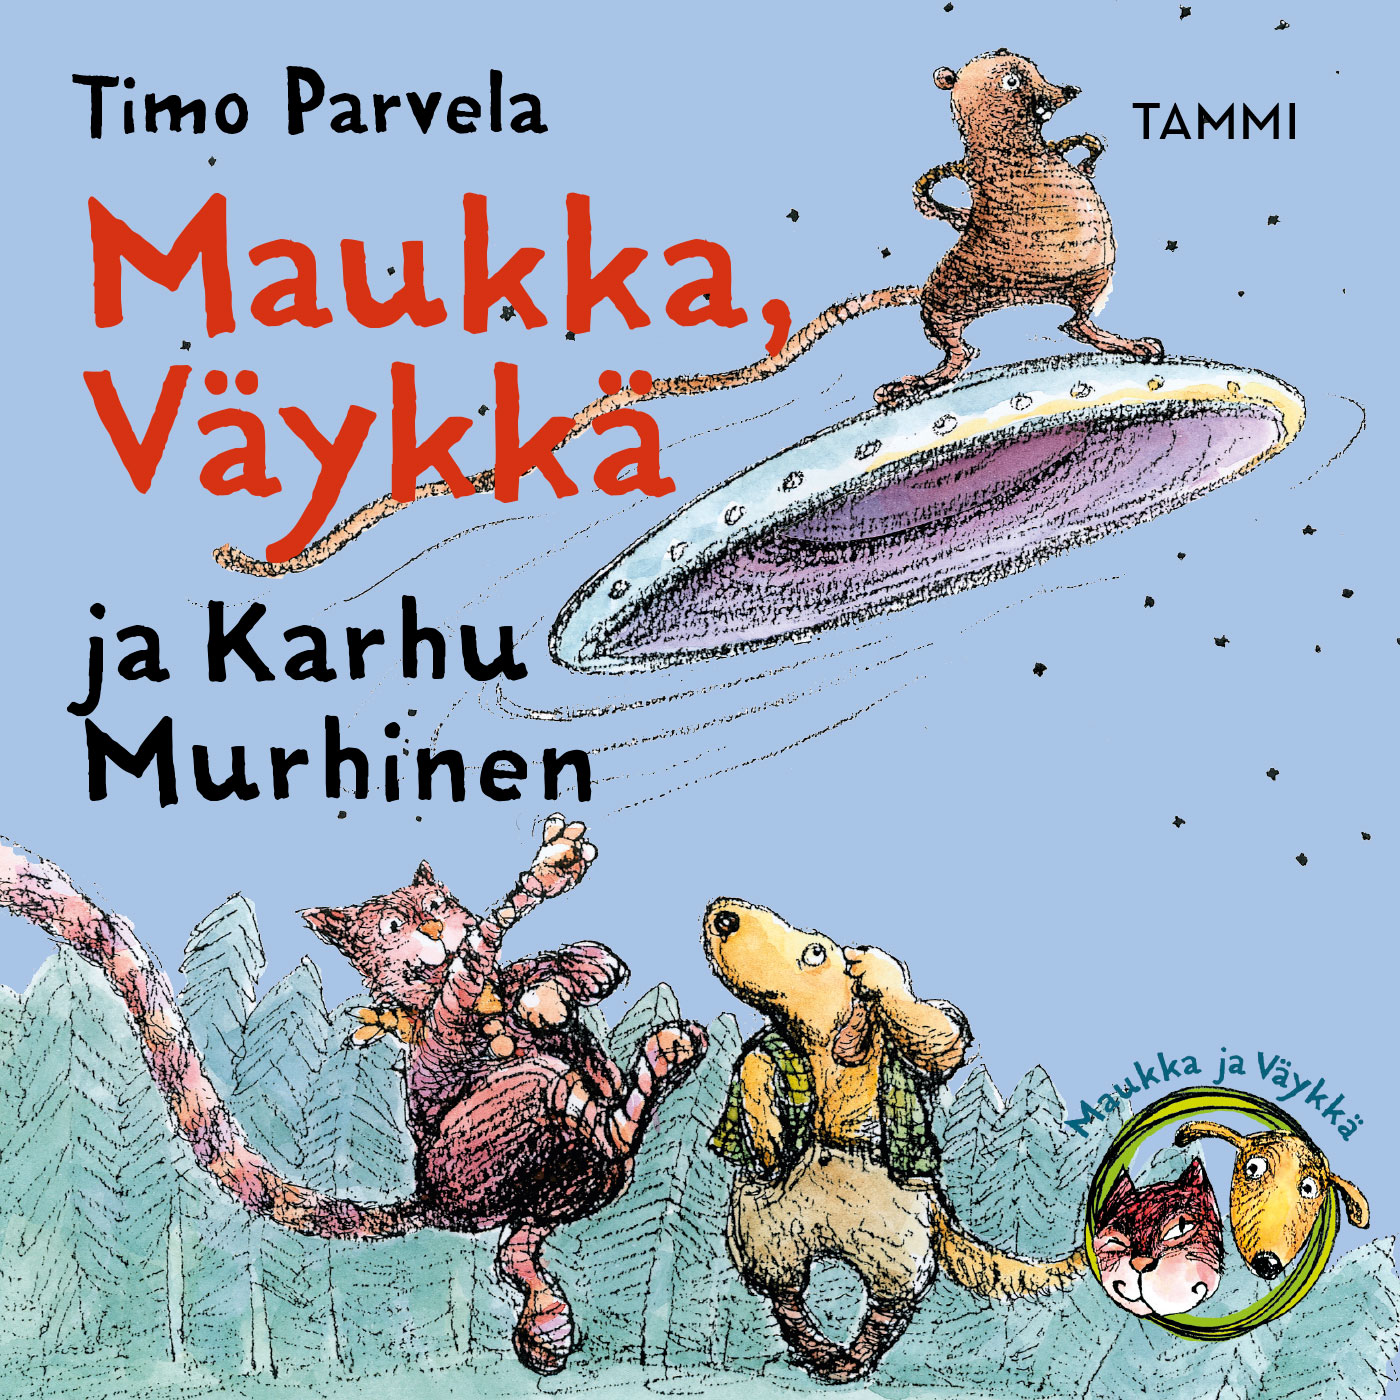 Parvela, Timo - Maukka, Väykkä ja Karhu Murhinen, äänikirja